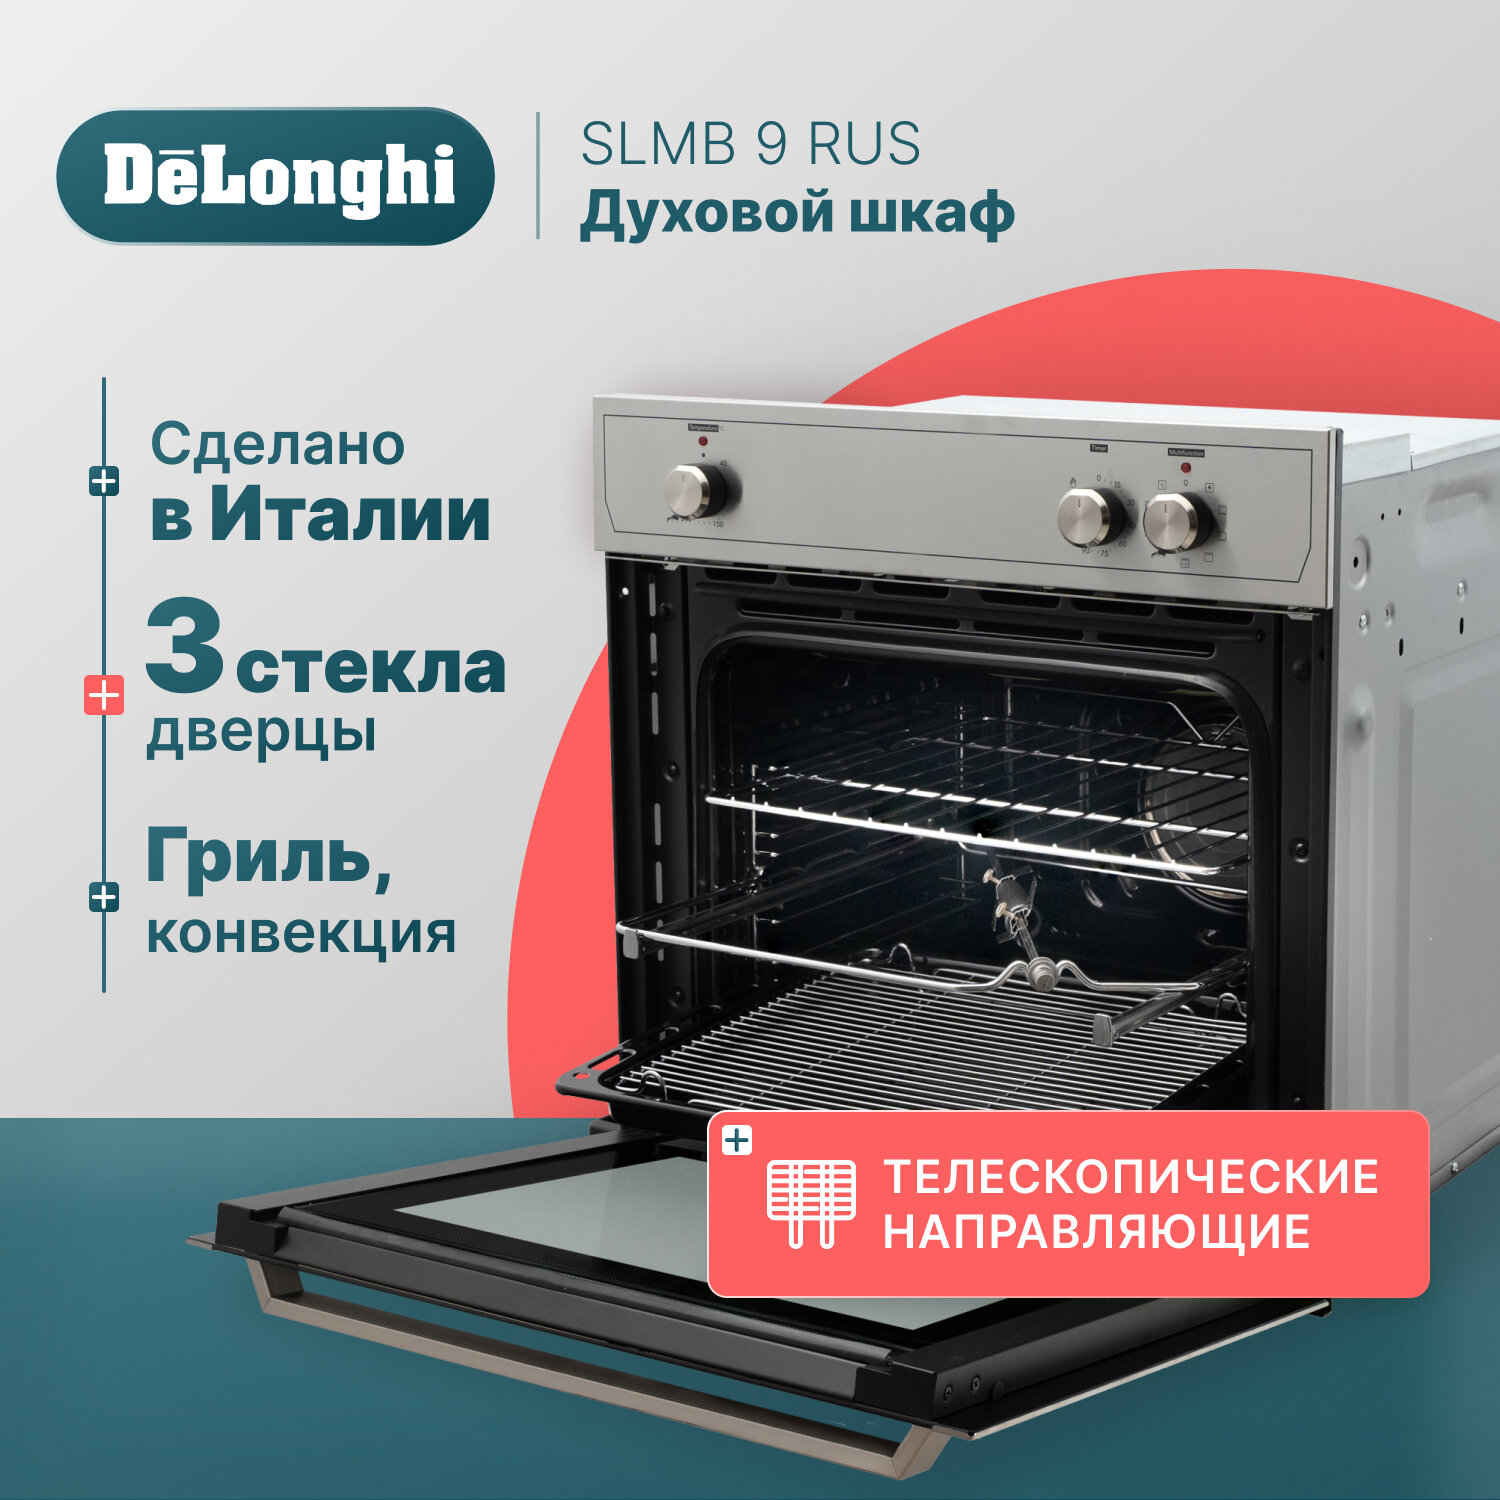 Многофункциональный электрический духовой шкаф DeLonghi SLMB 9 RUS, 60 см, серебристый, 9 режимов работы, гриль + конвекция, вертел